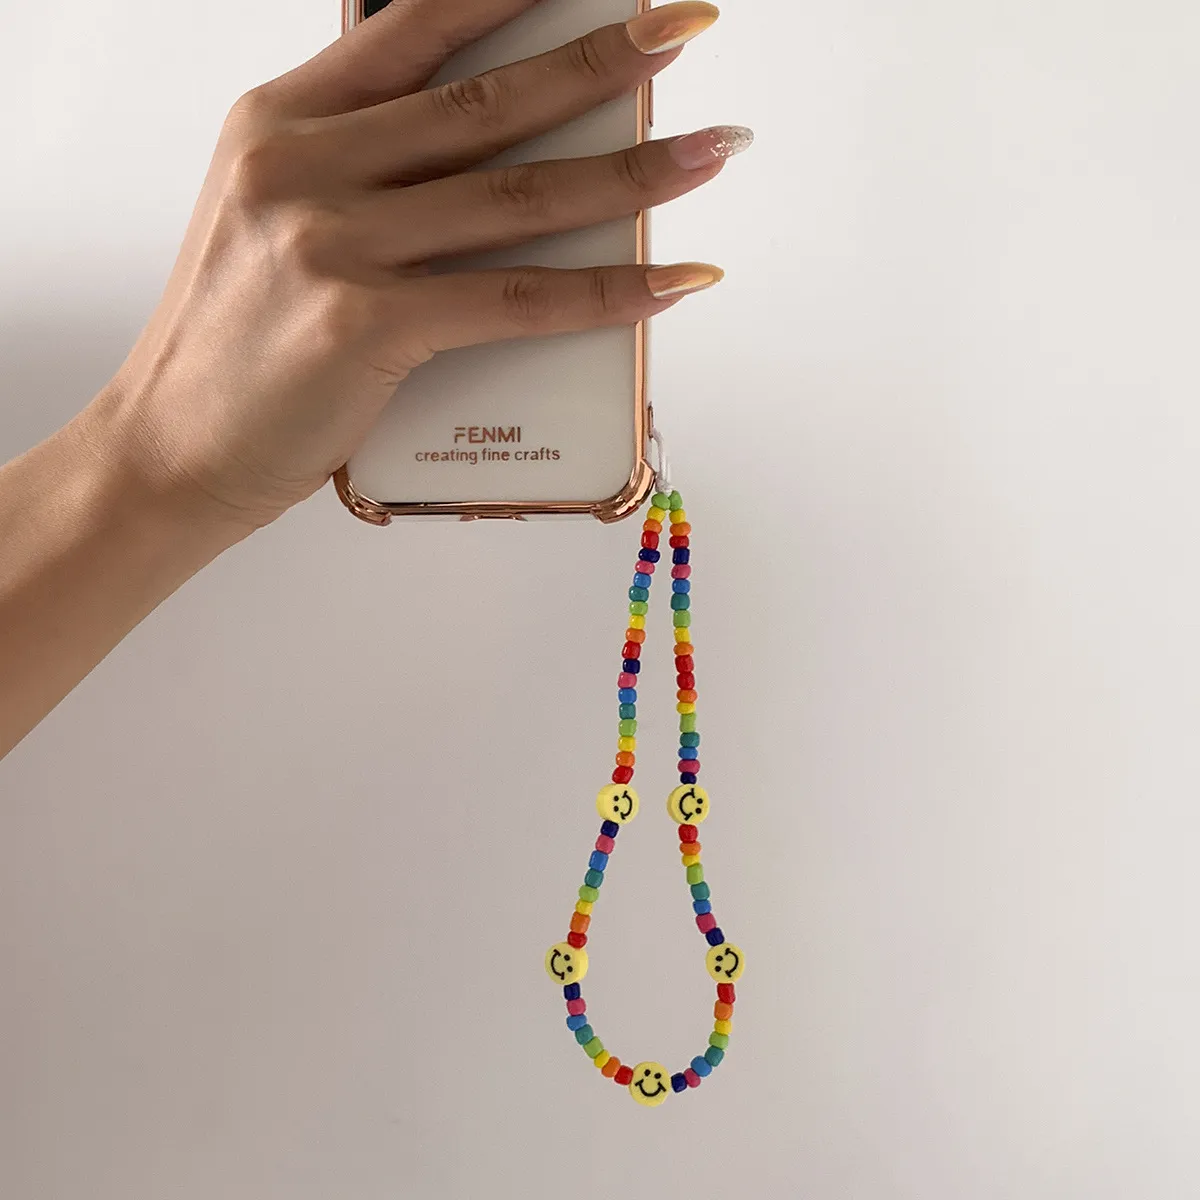 Sangle de téléphone mobile, perles chaîne de bijoux de perles pour accessoires de téléphone portable sac de contraste de couleur fraîche